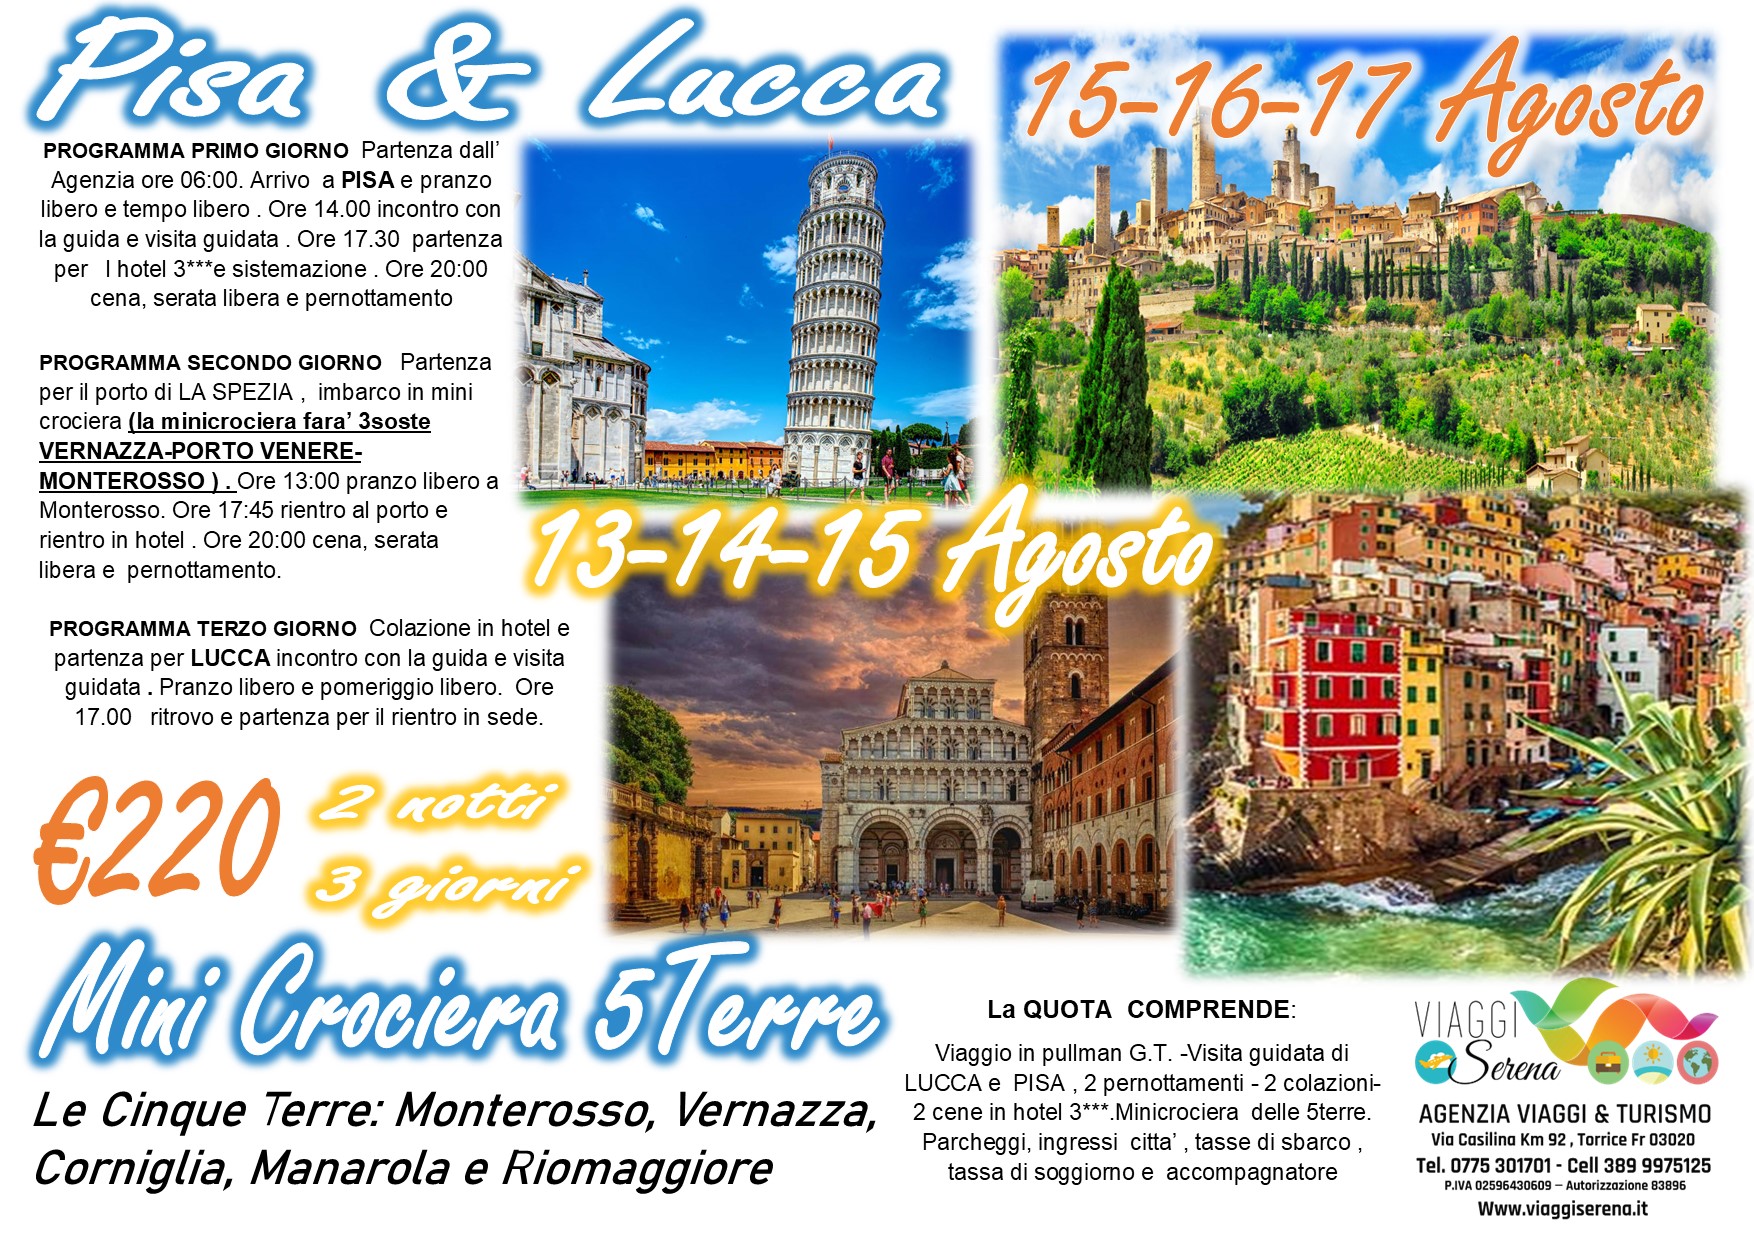 Viaggi di gruppo: Pisa & Lucca “Minicrociera 5 Terre” 13-14-15 Agosto €220,00